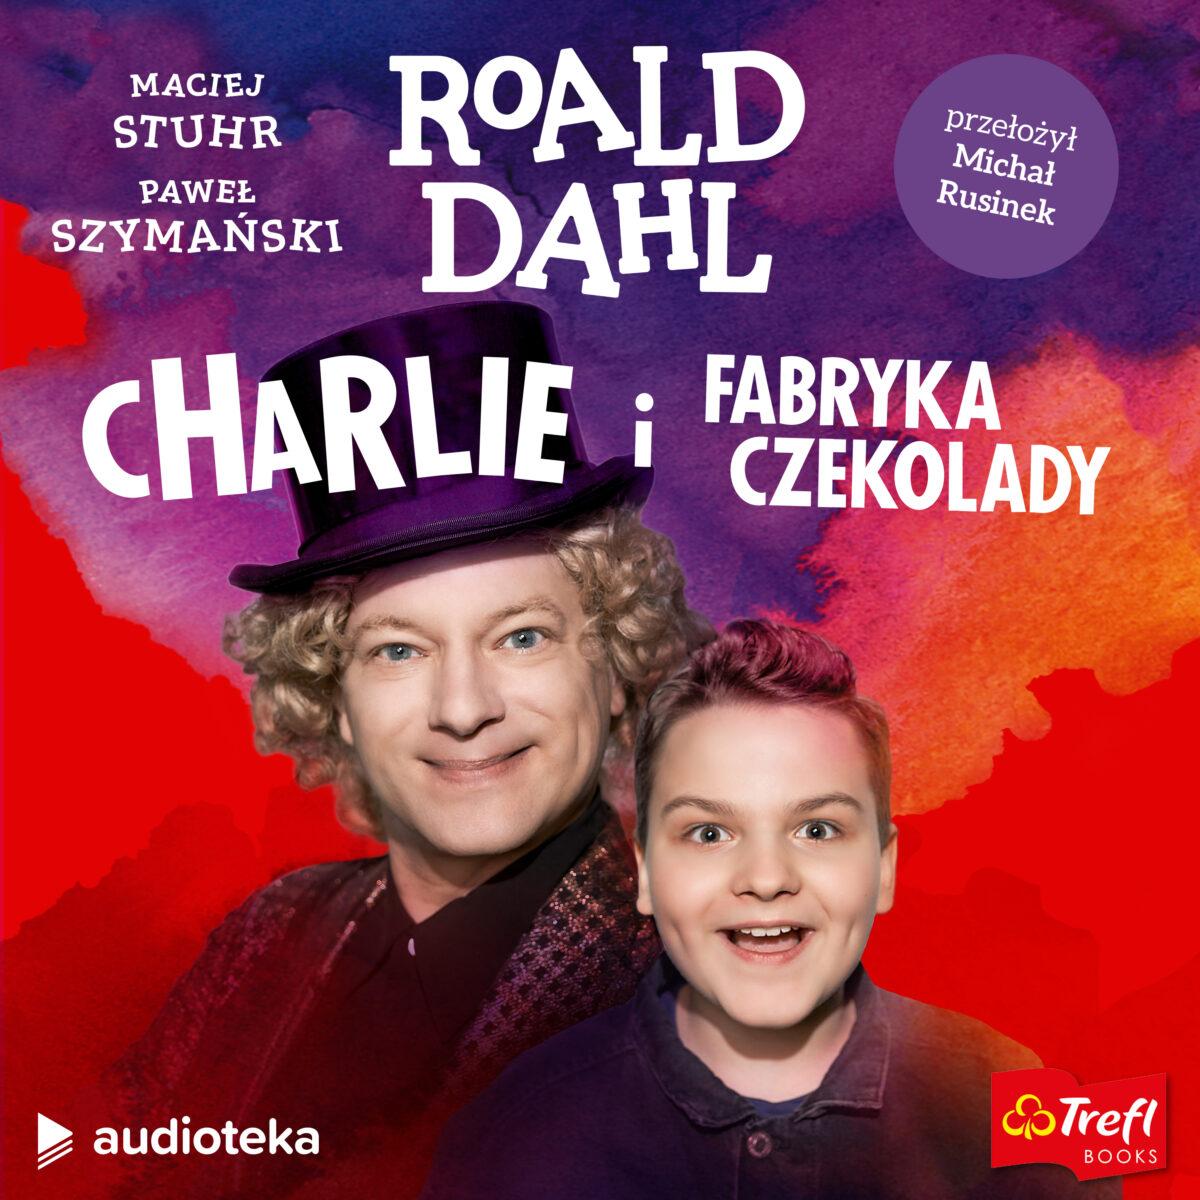 Maciej Stuhr jako Willy Wonka w nowym audiomusicalu Audioteki „Charlie i fabryka czekolady”